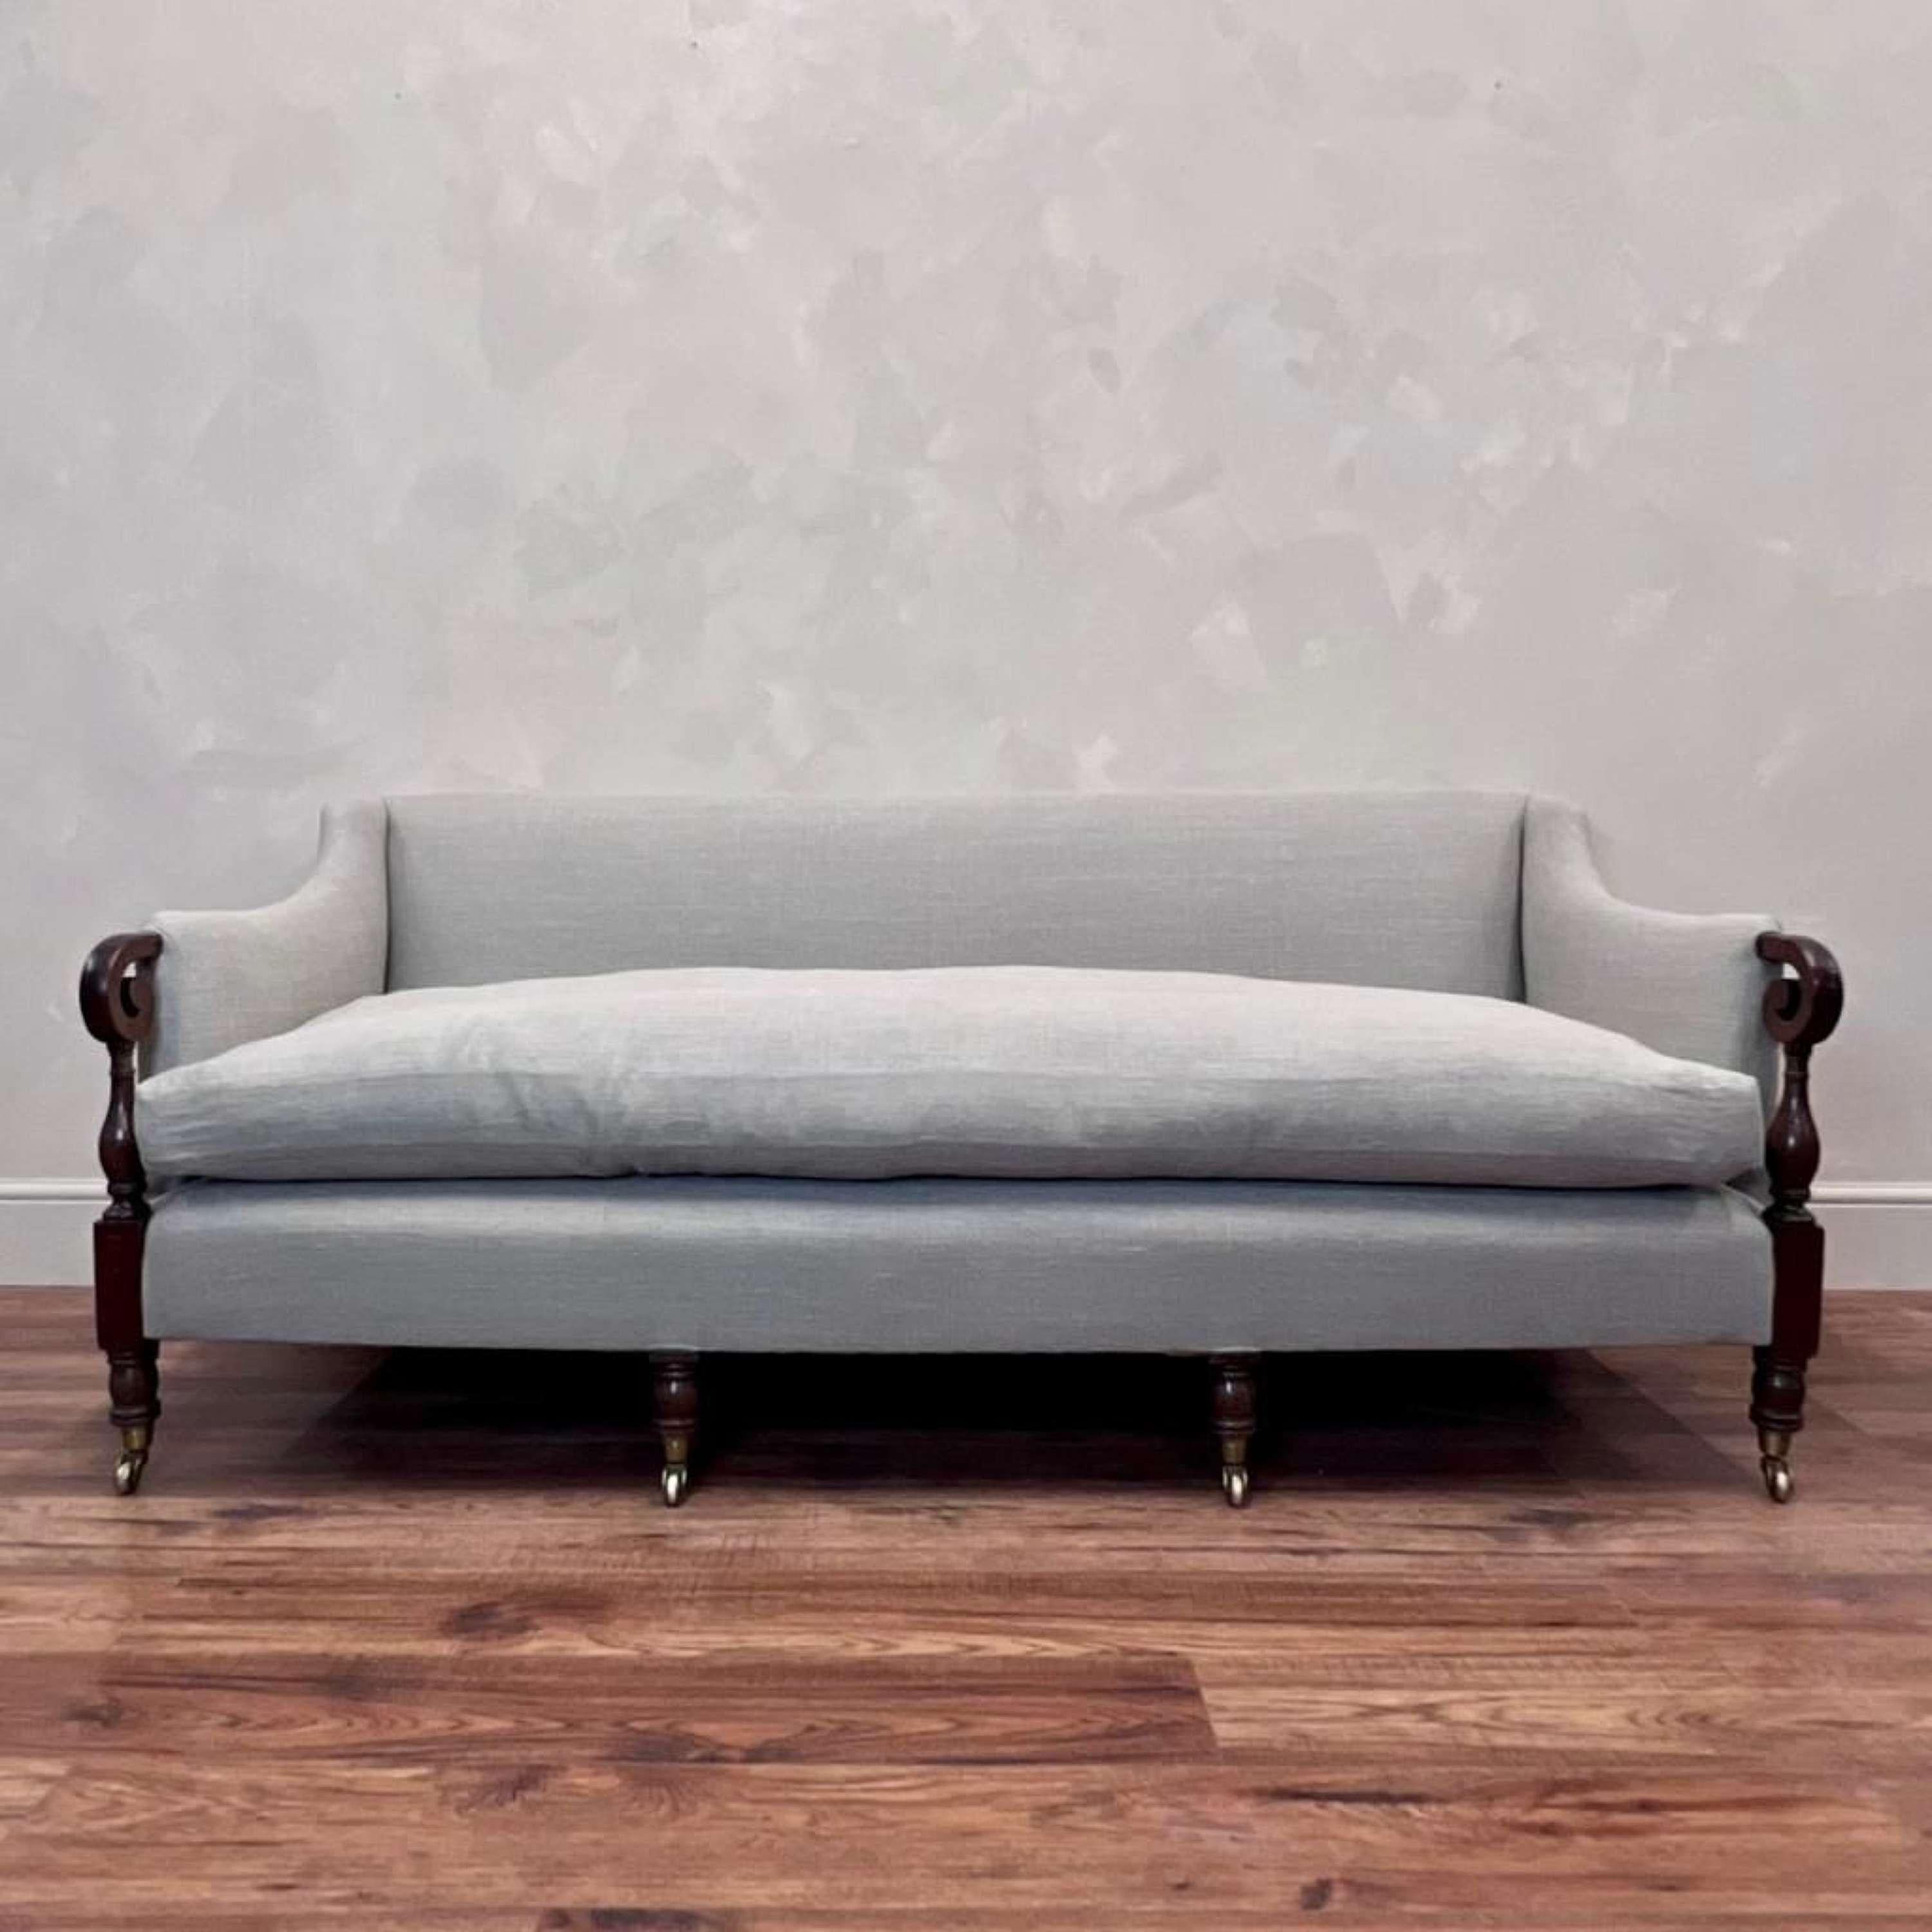 Sofa mit geschwungenen Armlehnen aus Mahagoni.
6 Beine mit originalen Messingrollen.
Neu gepolstert mit hochwertigem Leinenstoff, maßgefertigtes großes Federkissen.
Dieses Stück ist so bequem und hat eine tolle Größe 


Englisch um 1880

Länge - 187